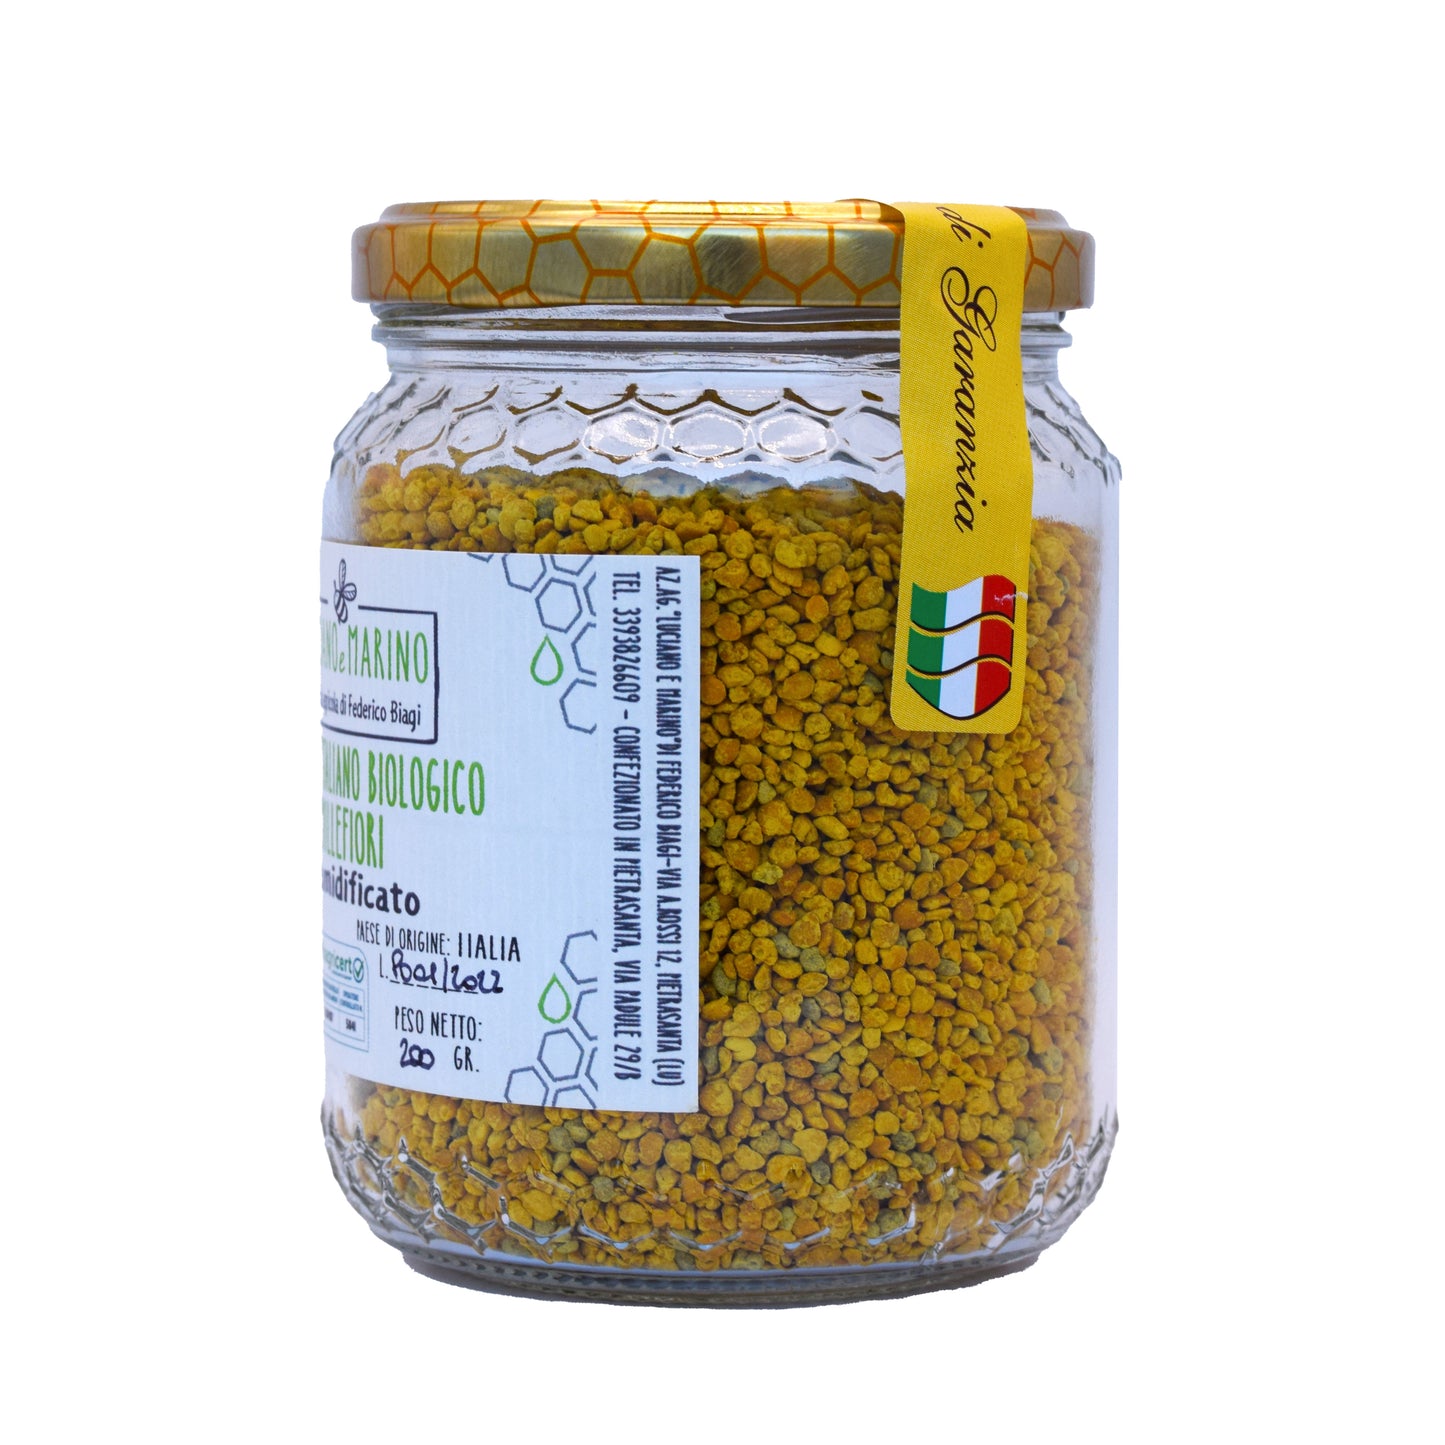 Polline Italiano Bio Millefiori deumidificato - 200g